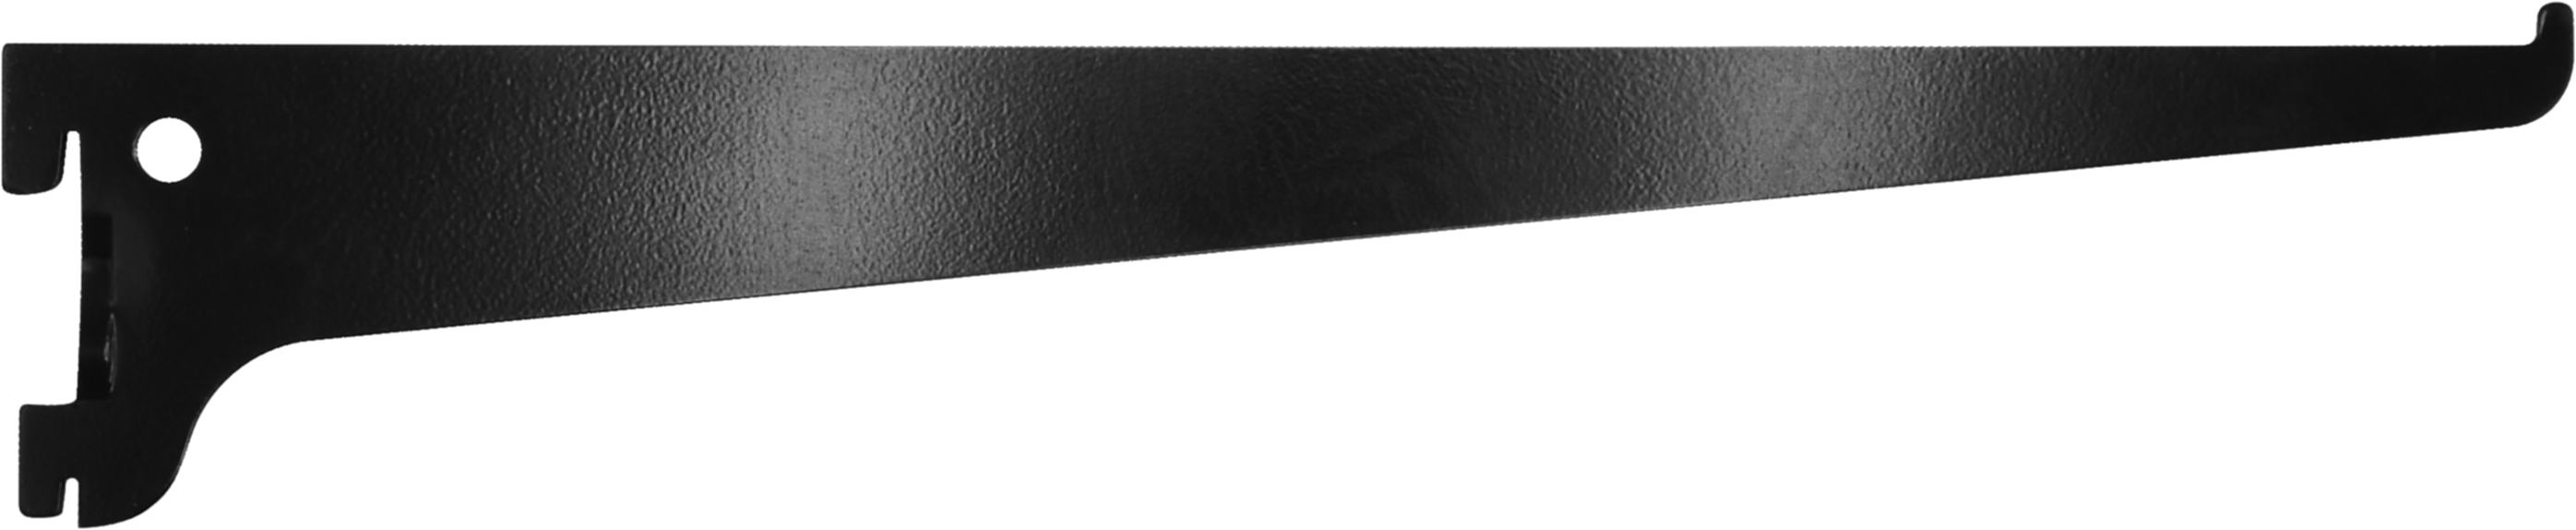 Console simple acier noir 30 cm entraxe 50 mm - CIME